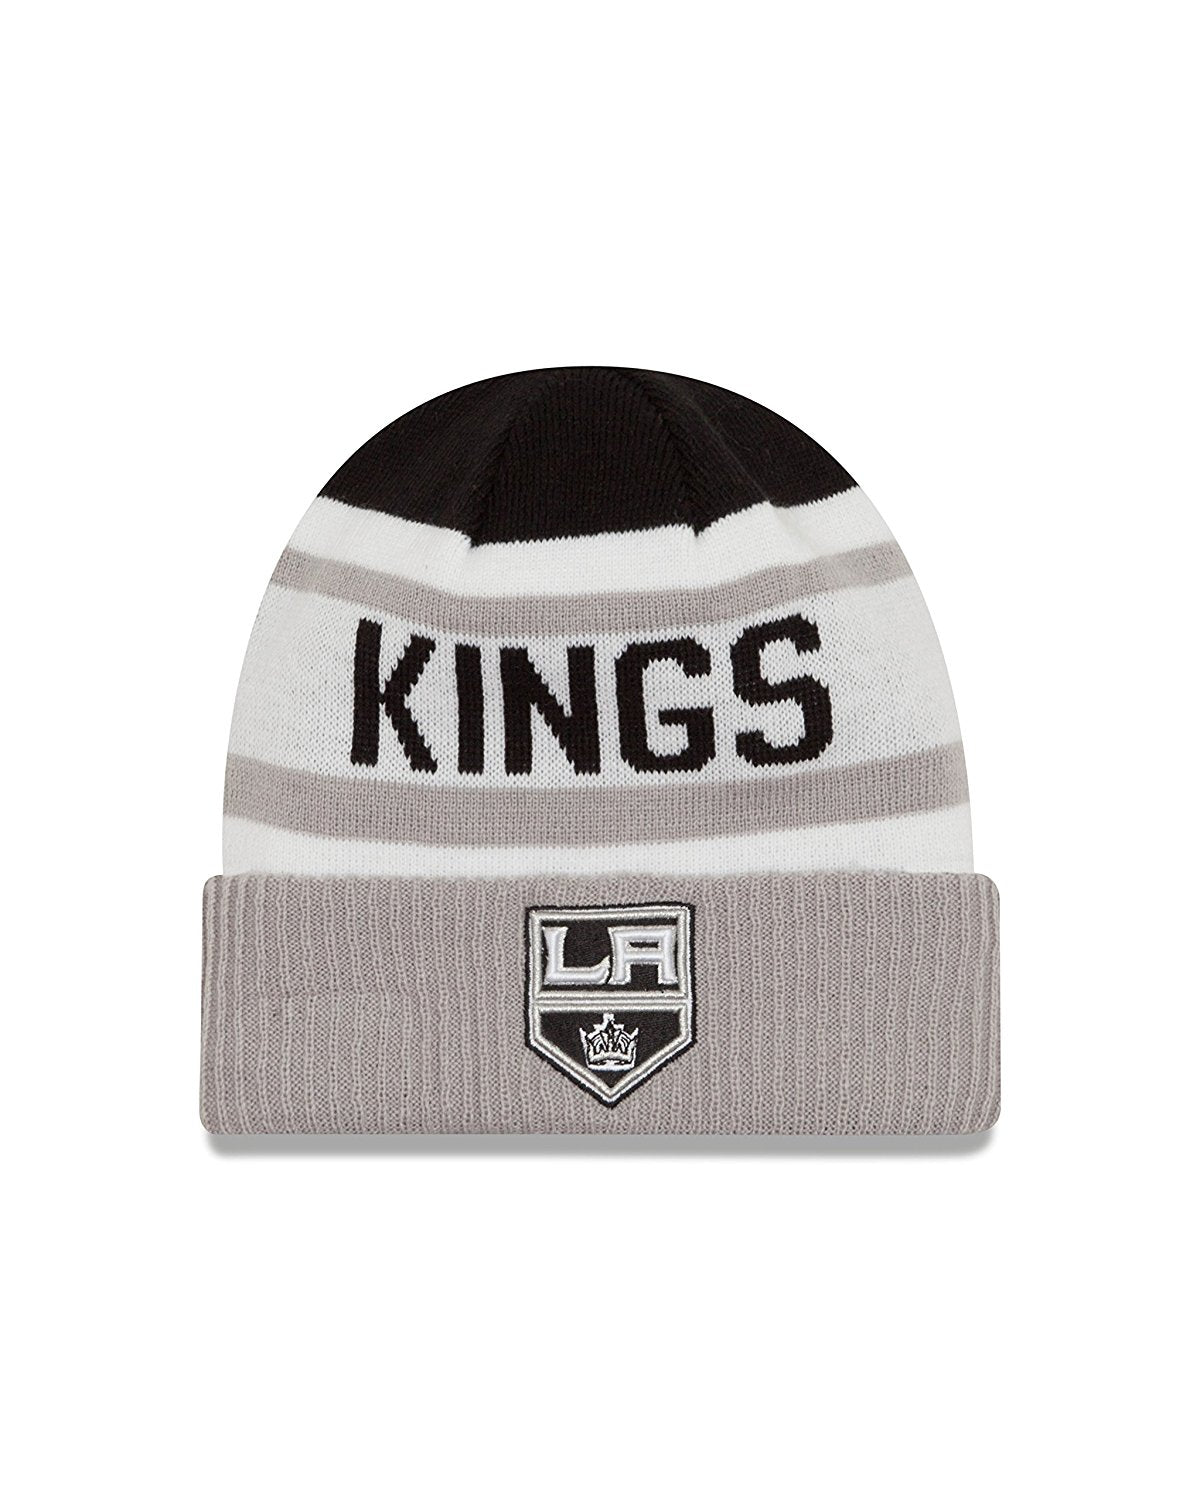 Los Angeles Kings New Era Biggest Fan Knit Hat